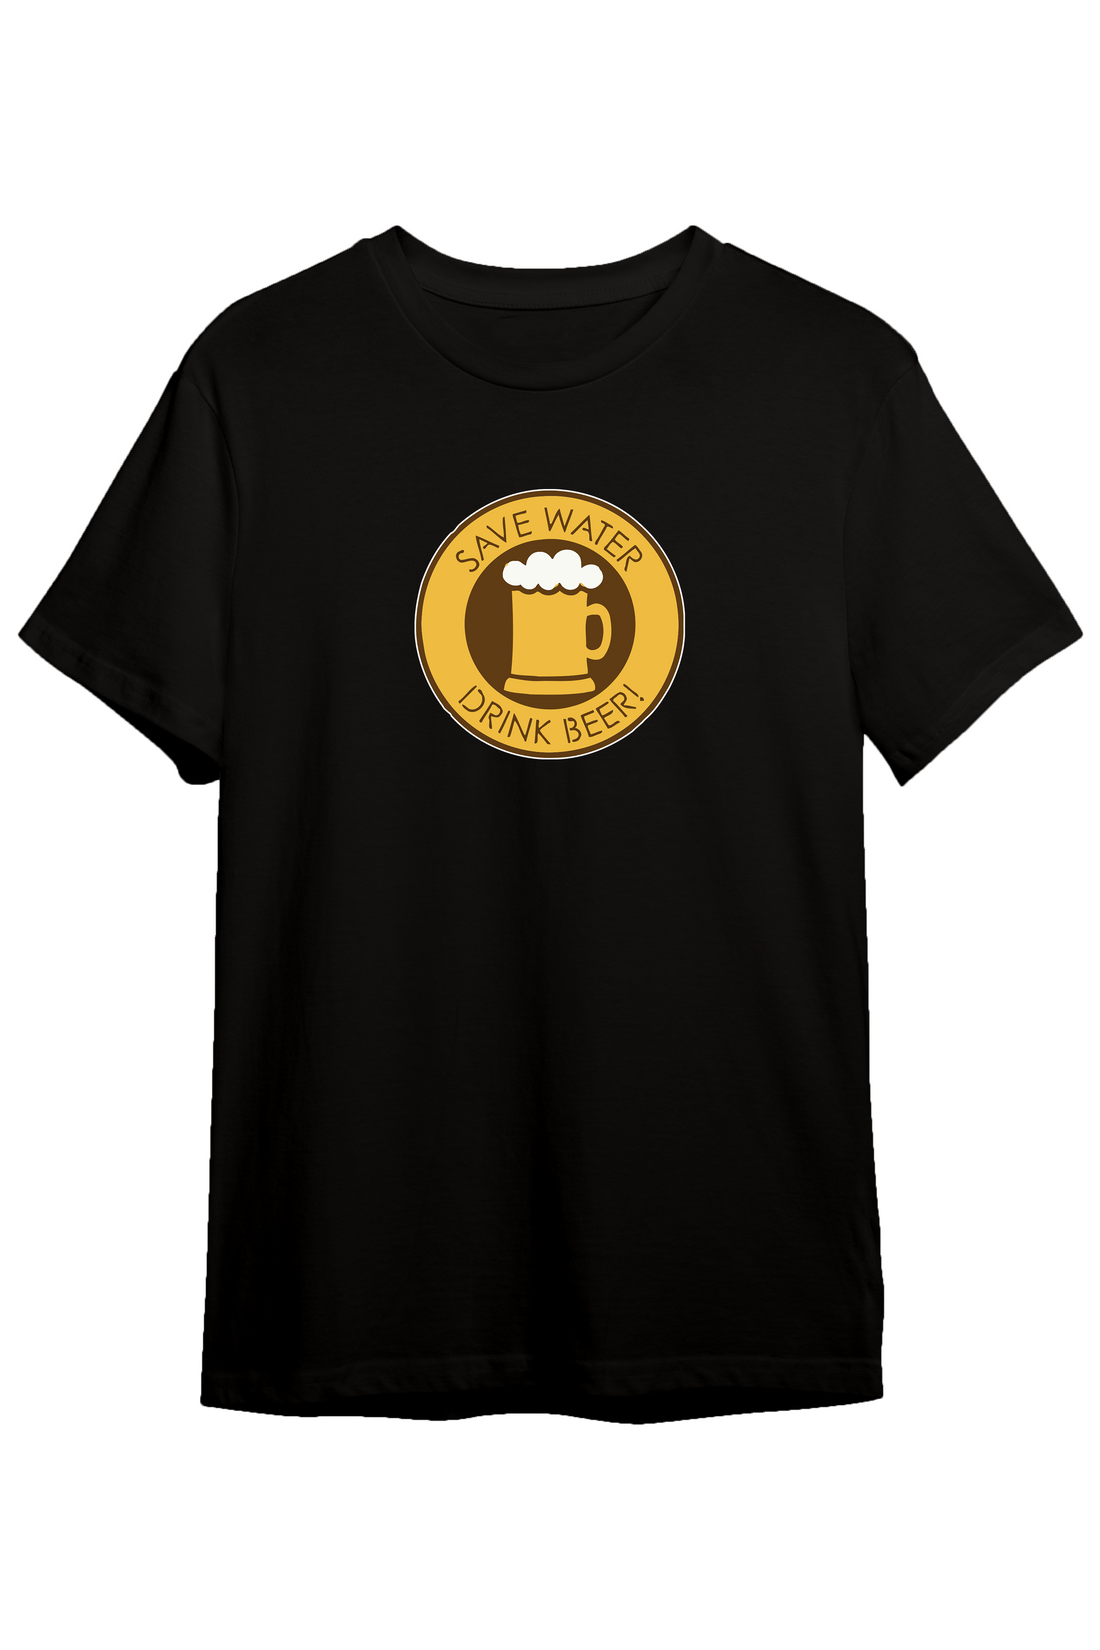 Save Water Drink Beer - Regular Tshirt